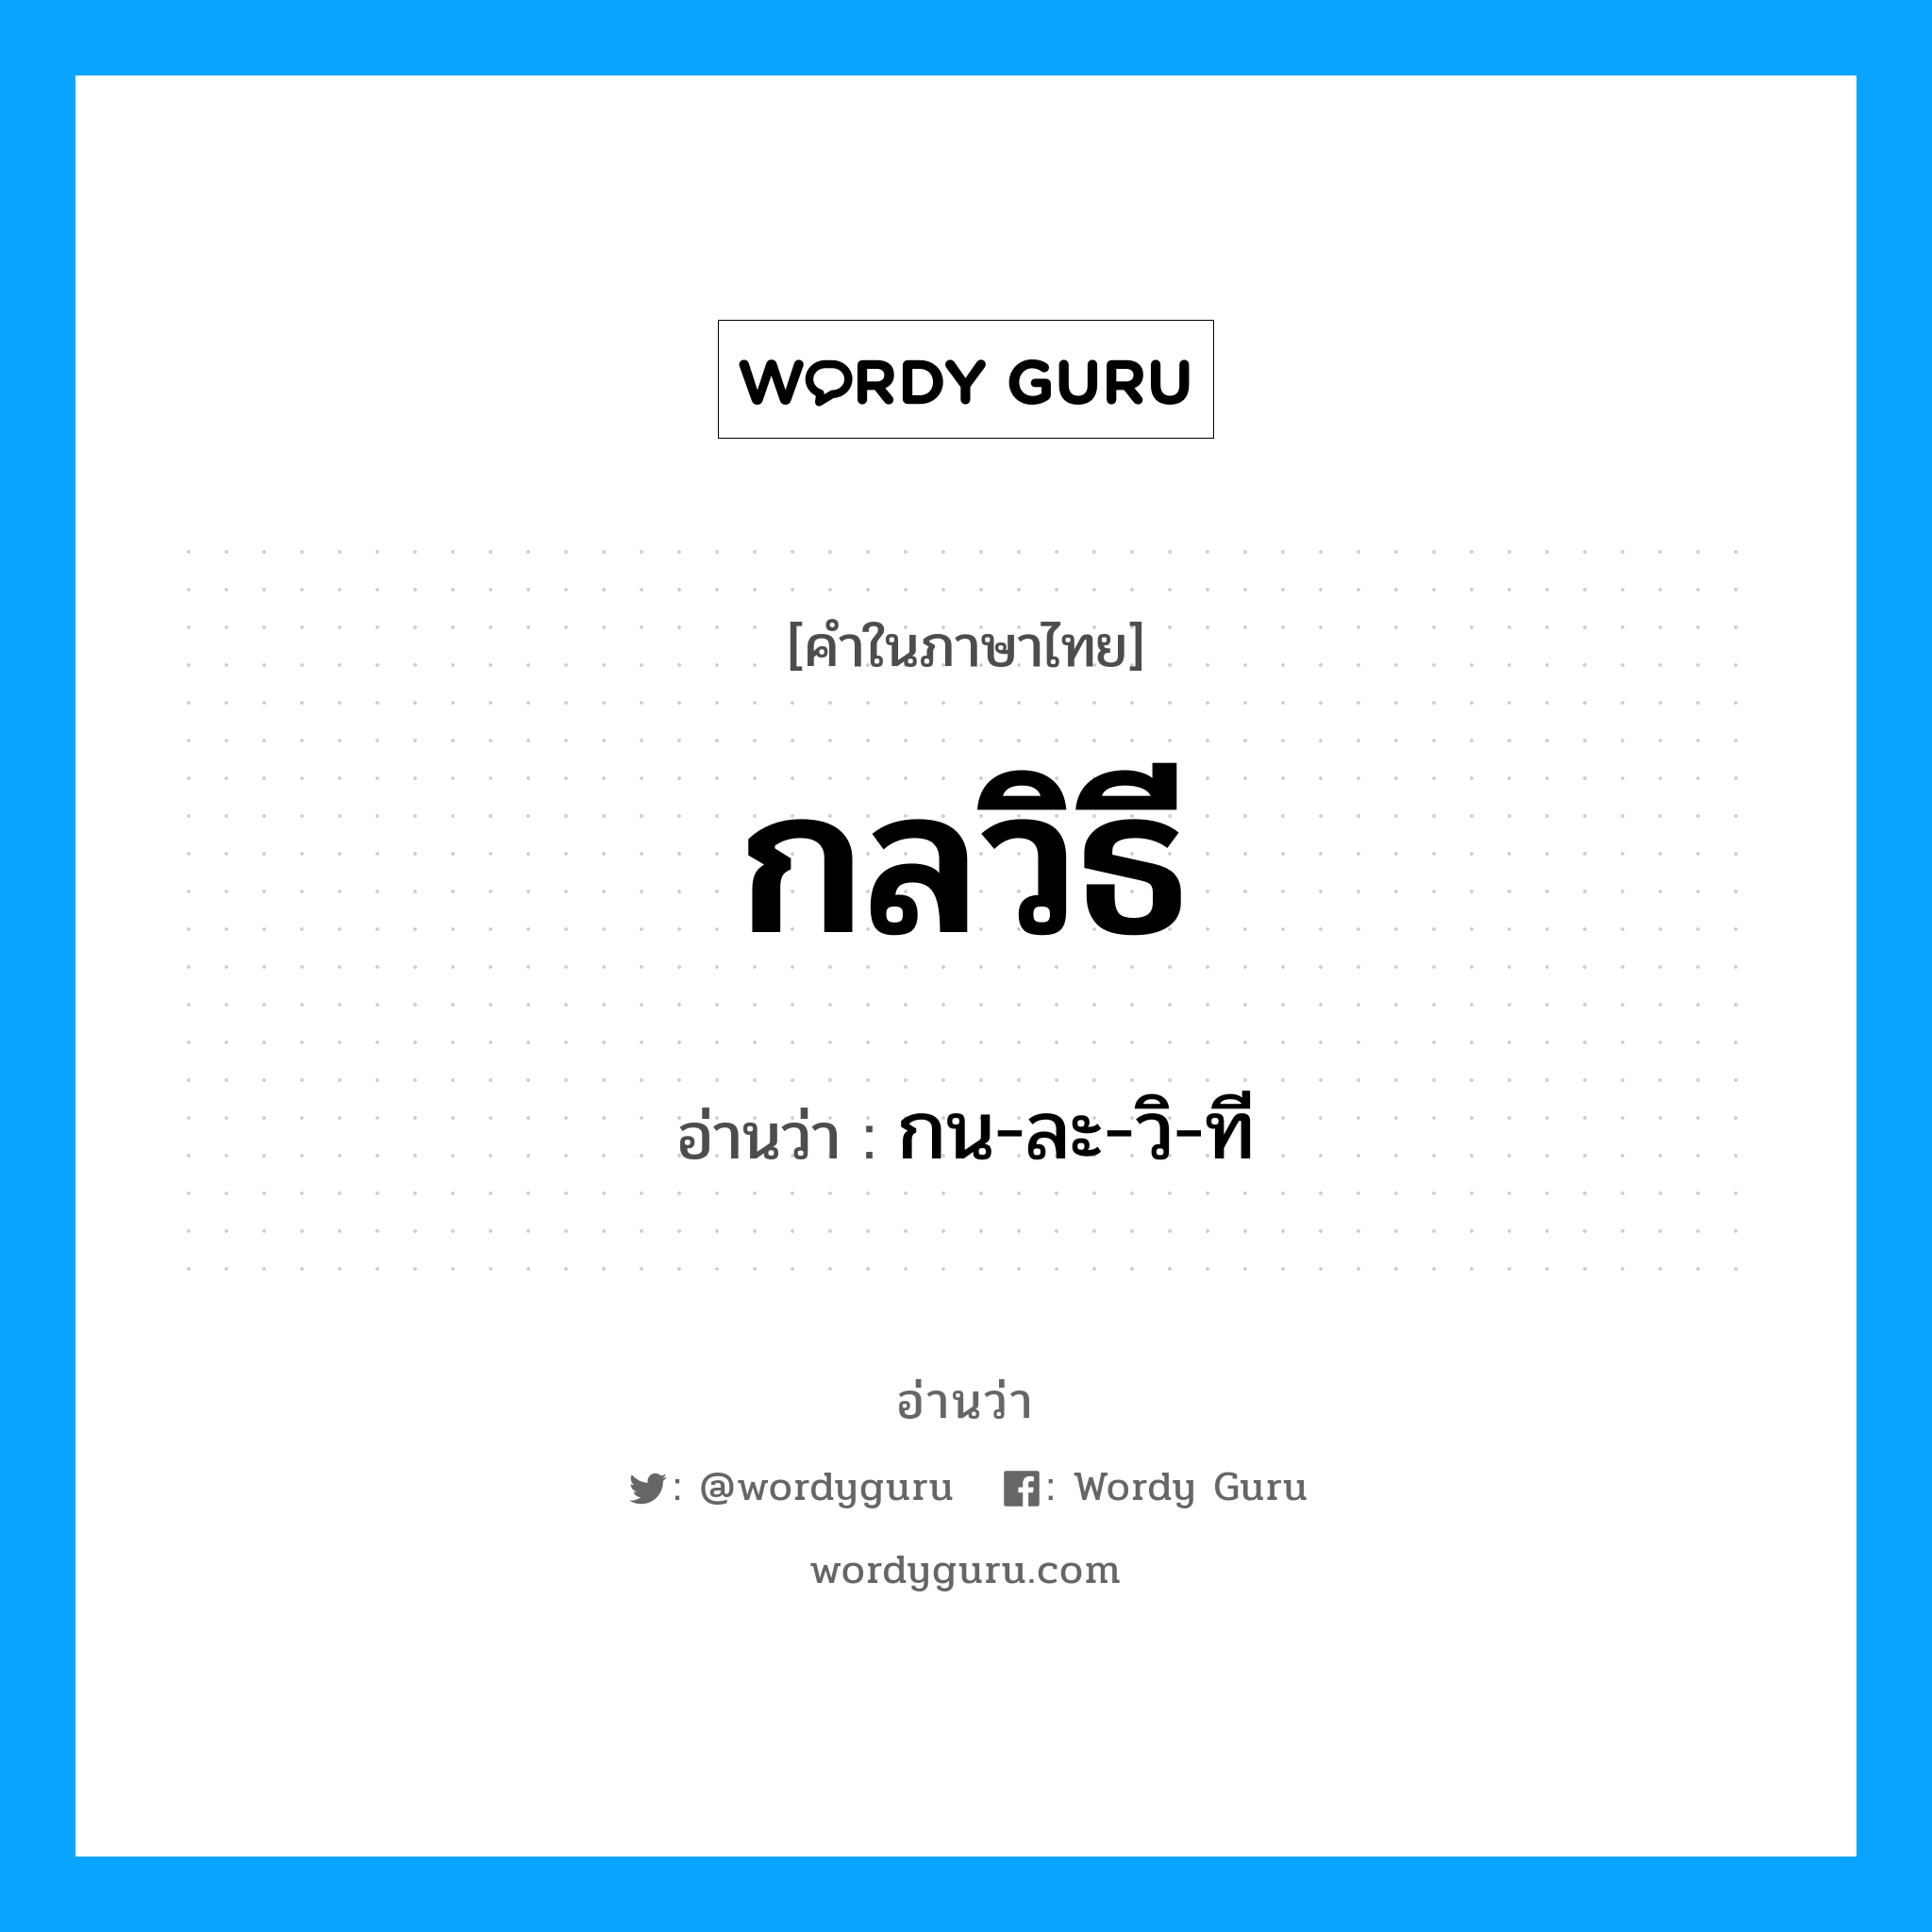 กน-ละ-วิ-ที เป็นคำอ่านของคำไหน?, คำในภาษาไทย กน-ละ-วิ-ที อ่านว่า กลวิธี